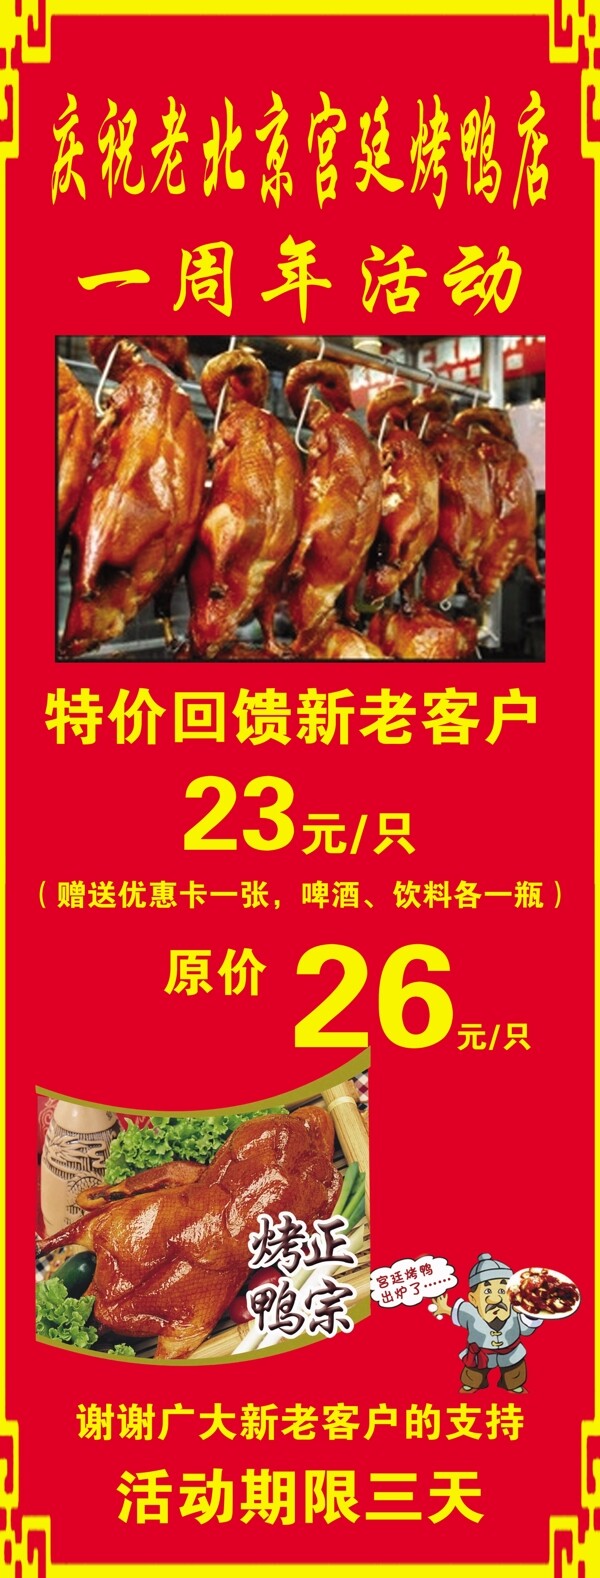 老北京宫廷烤鸭一周年活动图片